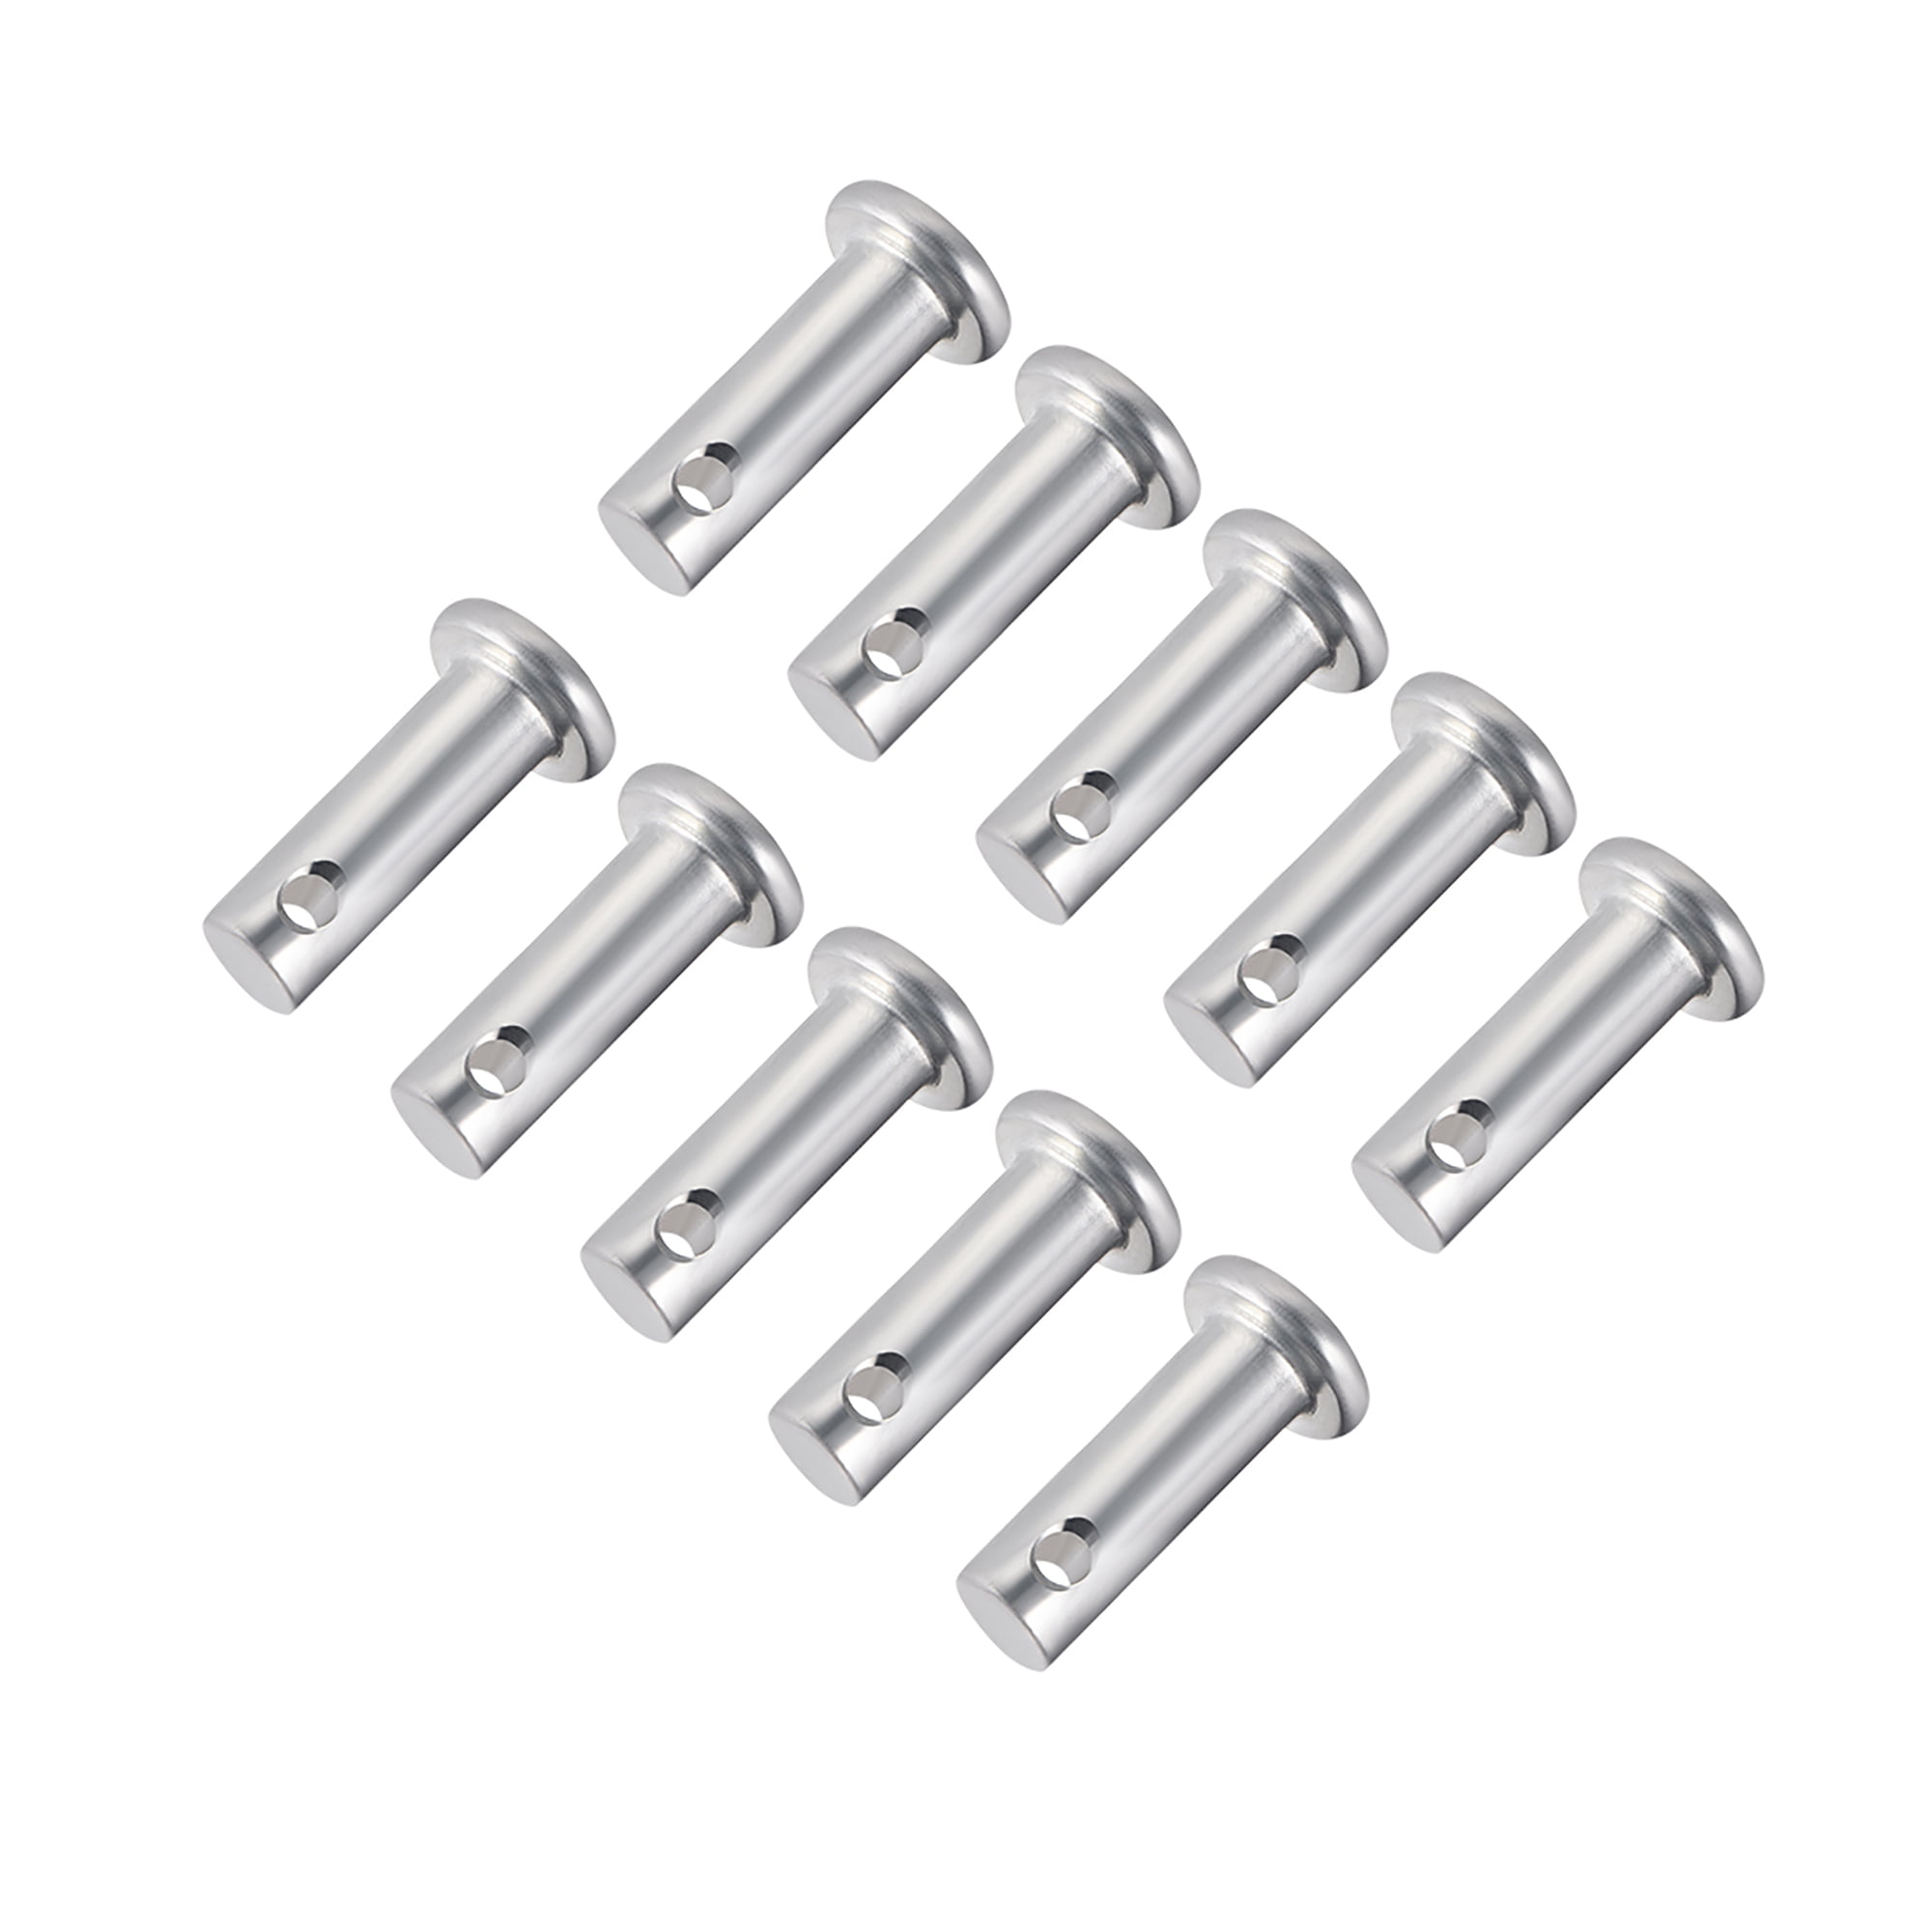 Single Hole Clevis Pins,6mm x 16mm Flat Head Zinc-Plating Steel  10 Pcs 